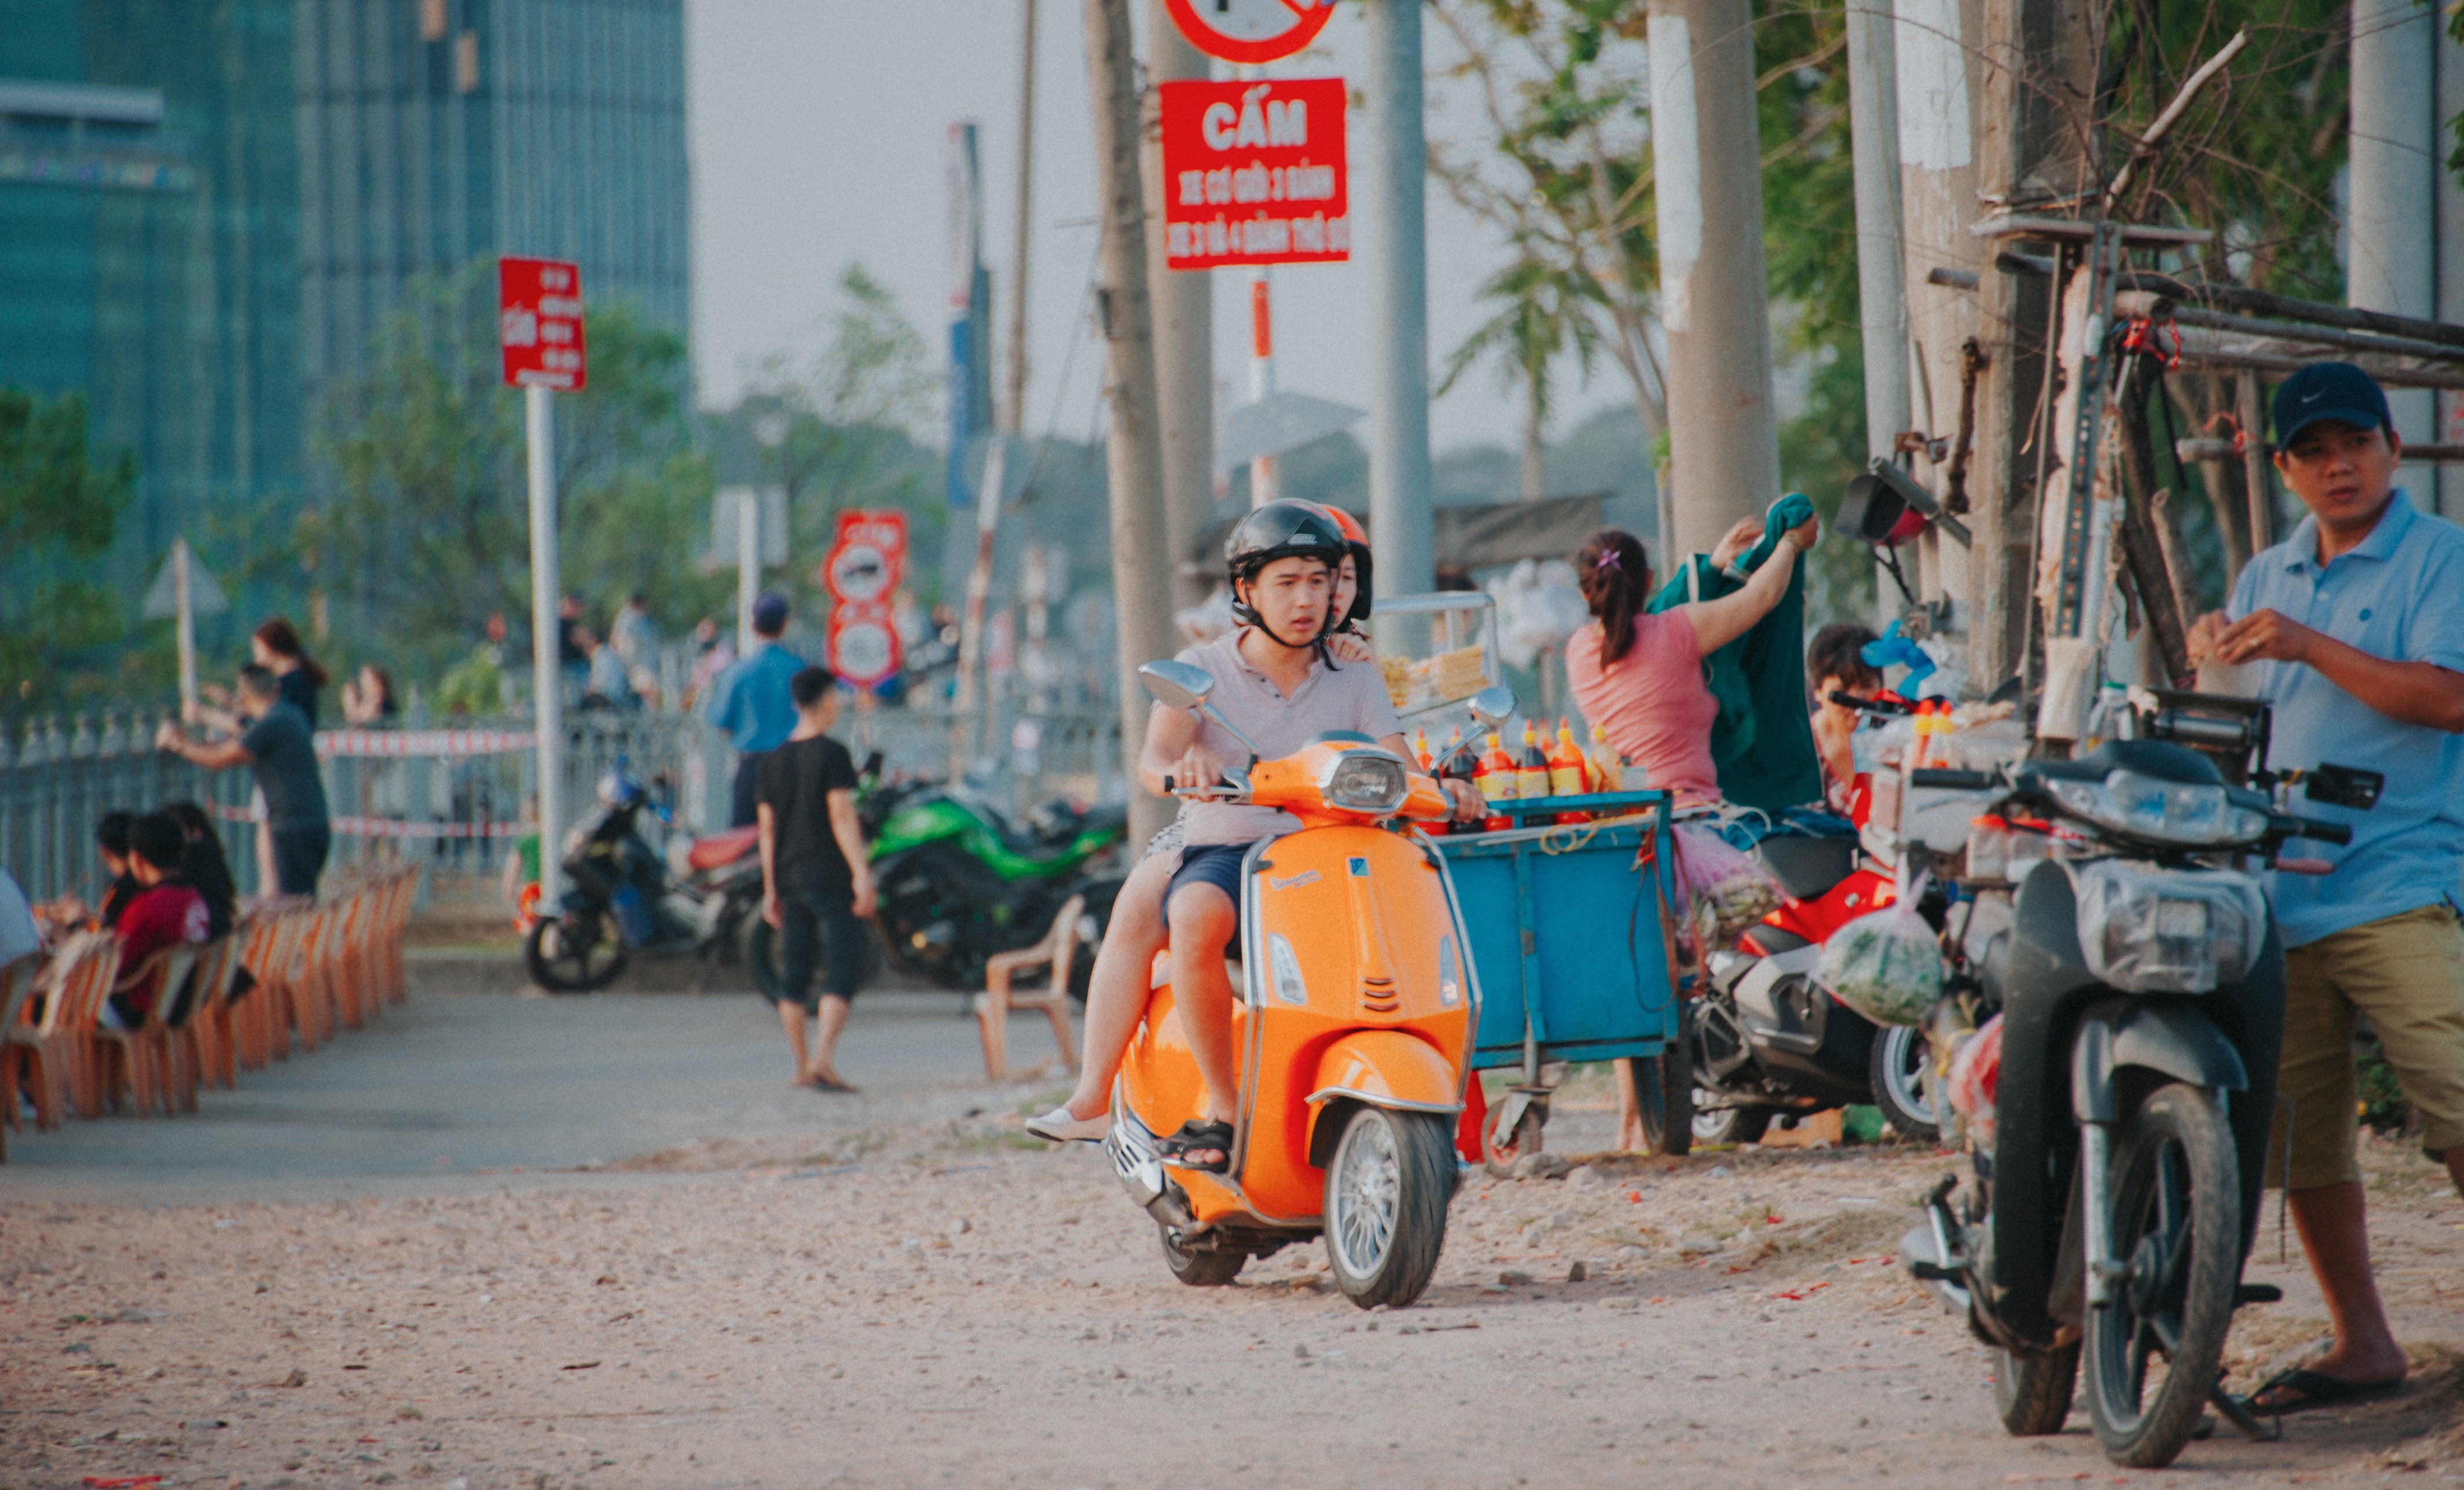 Man wearing grey shirt riding on orange motor scooter at daytime photo